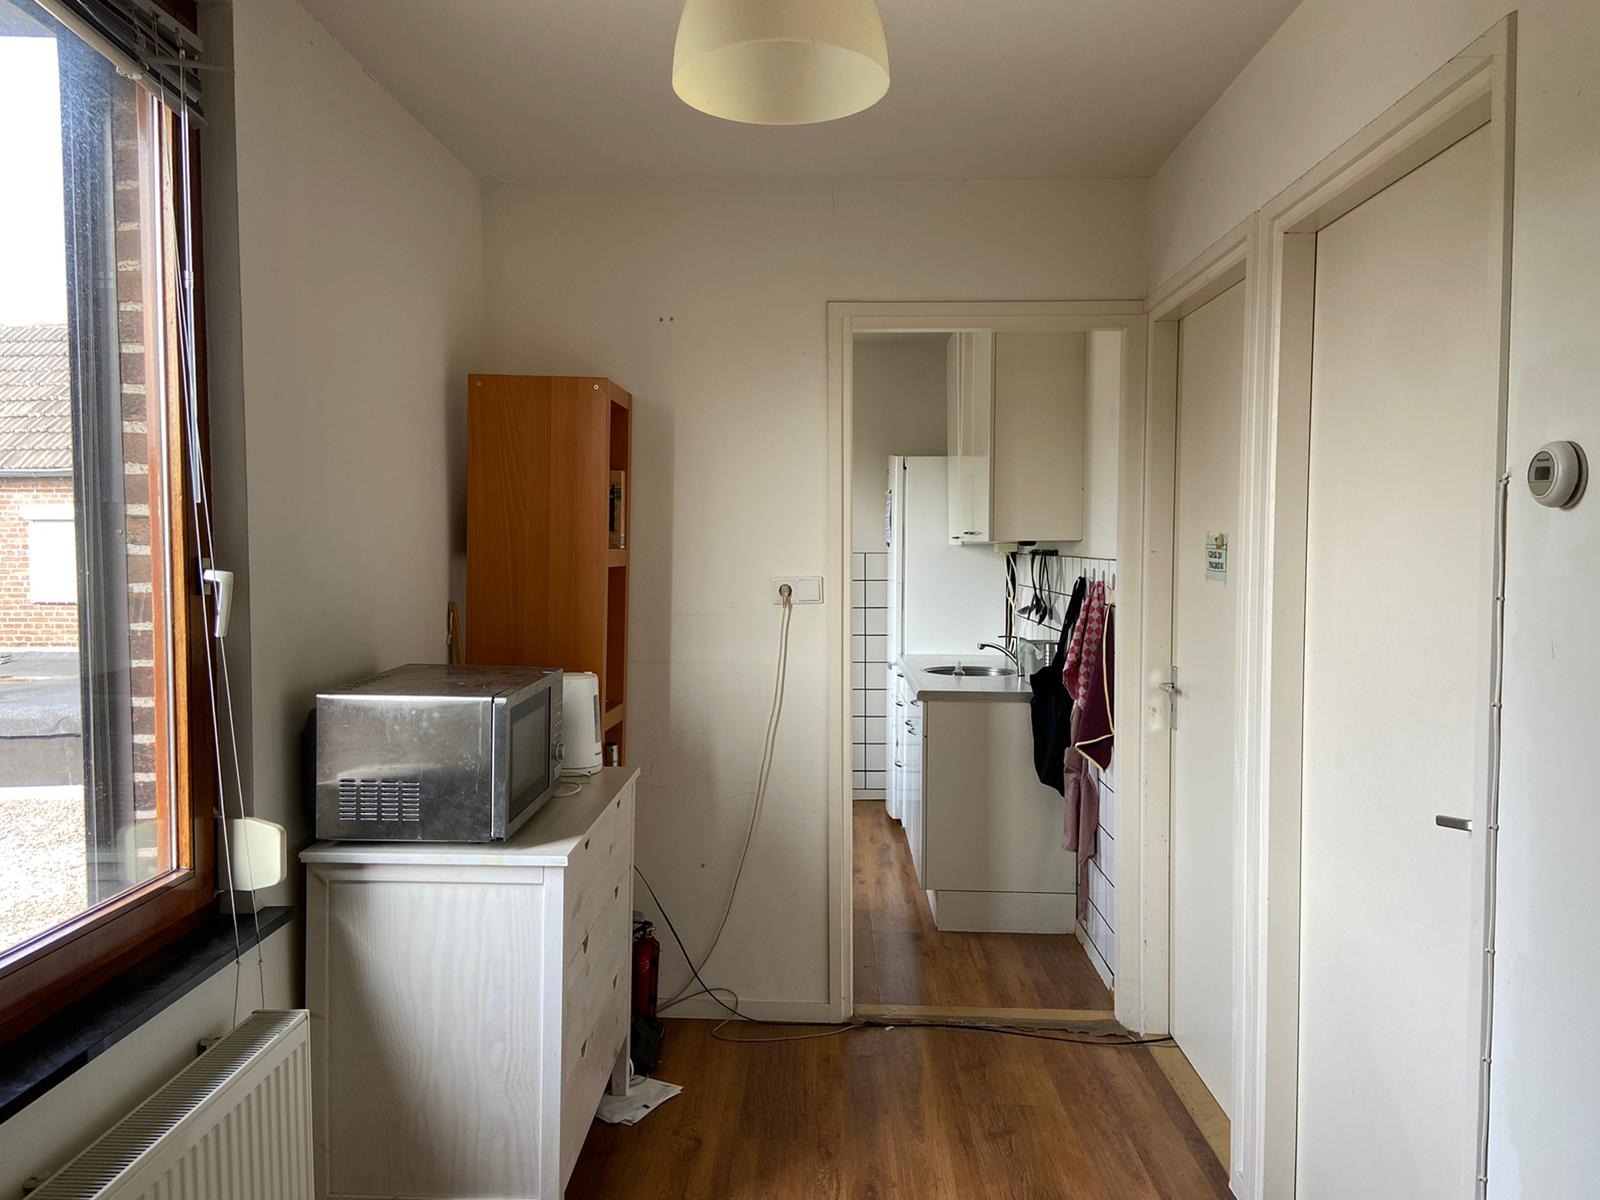 Woning / appartement - Maastricht - 